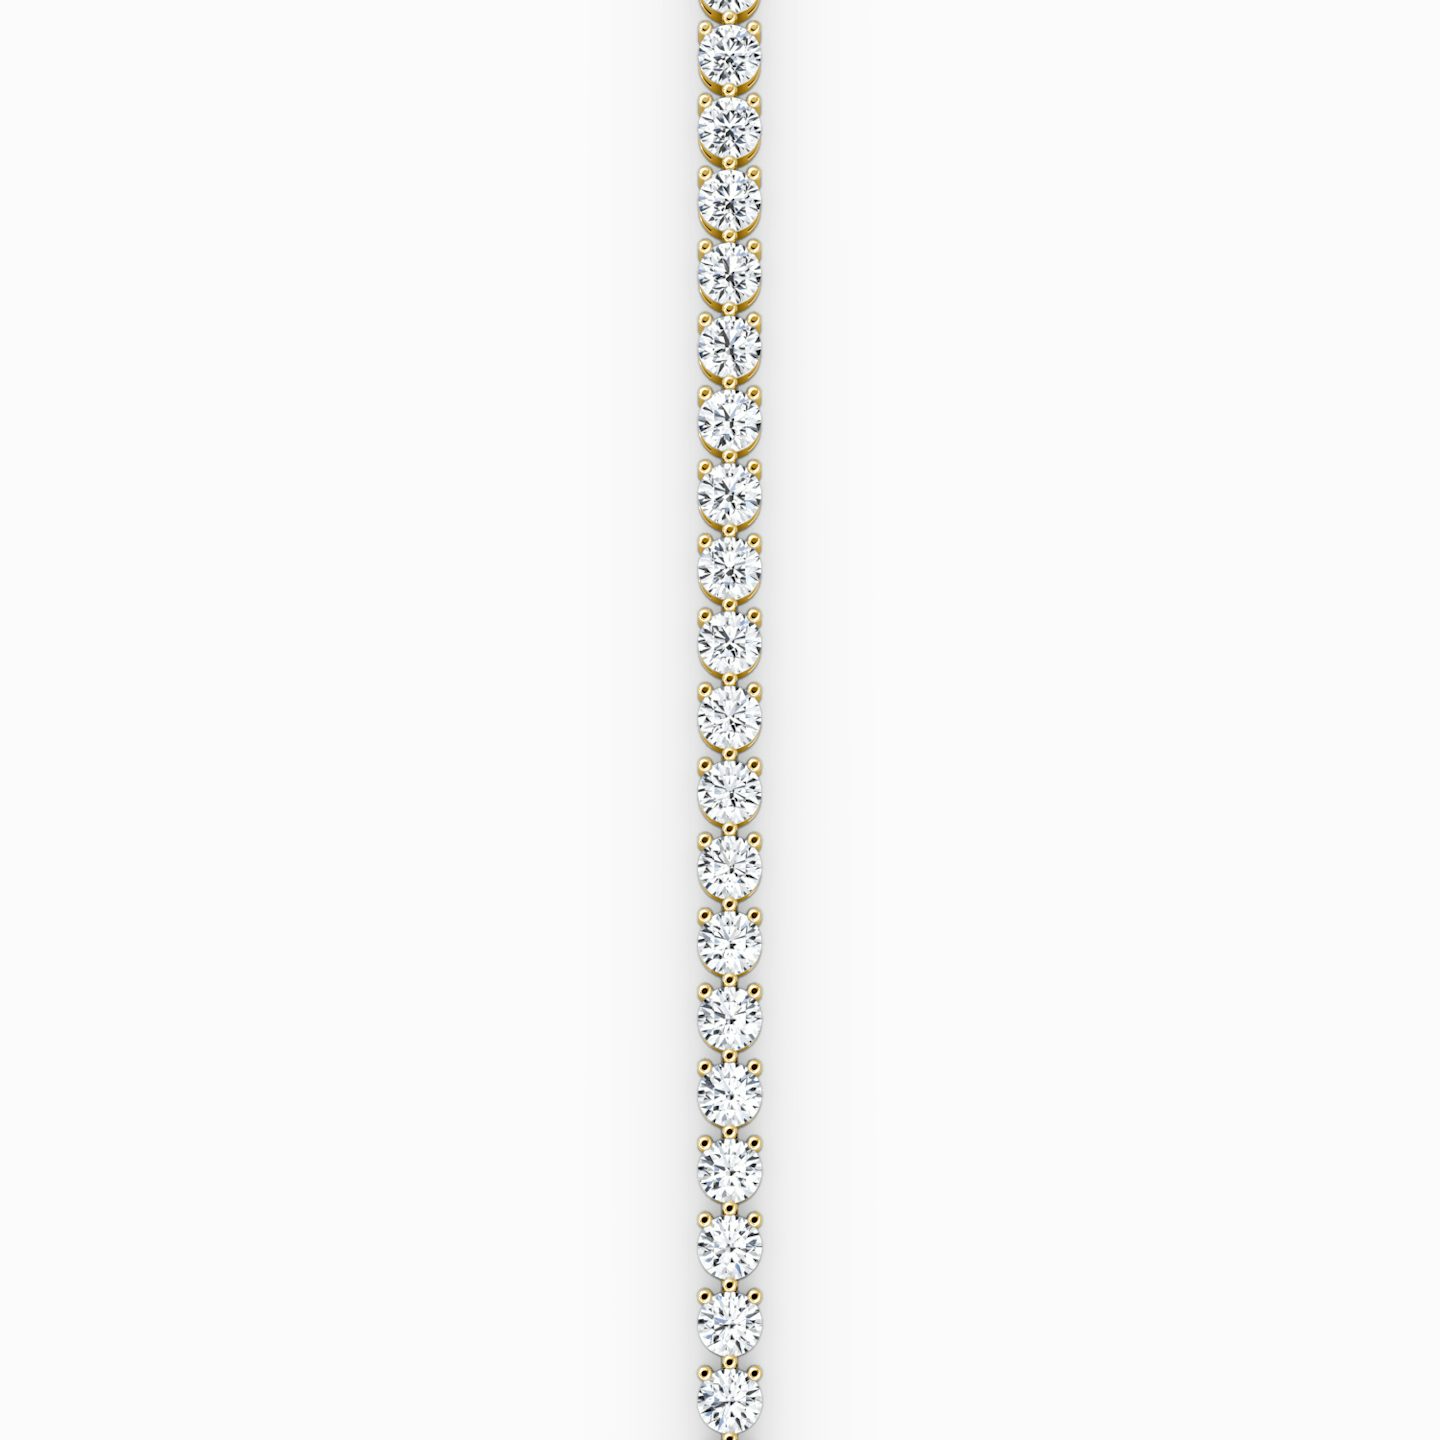 Bracelet Tennis | Rond Brillant | 14k | Or jaune 18 carats | Longueur de la chaîne: 5.5 | Taille des diamants: Large